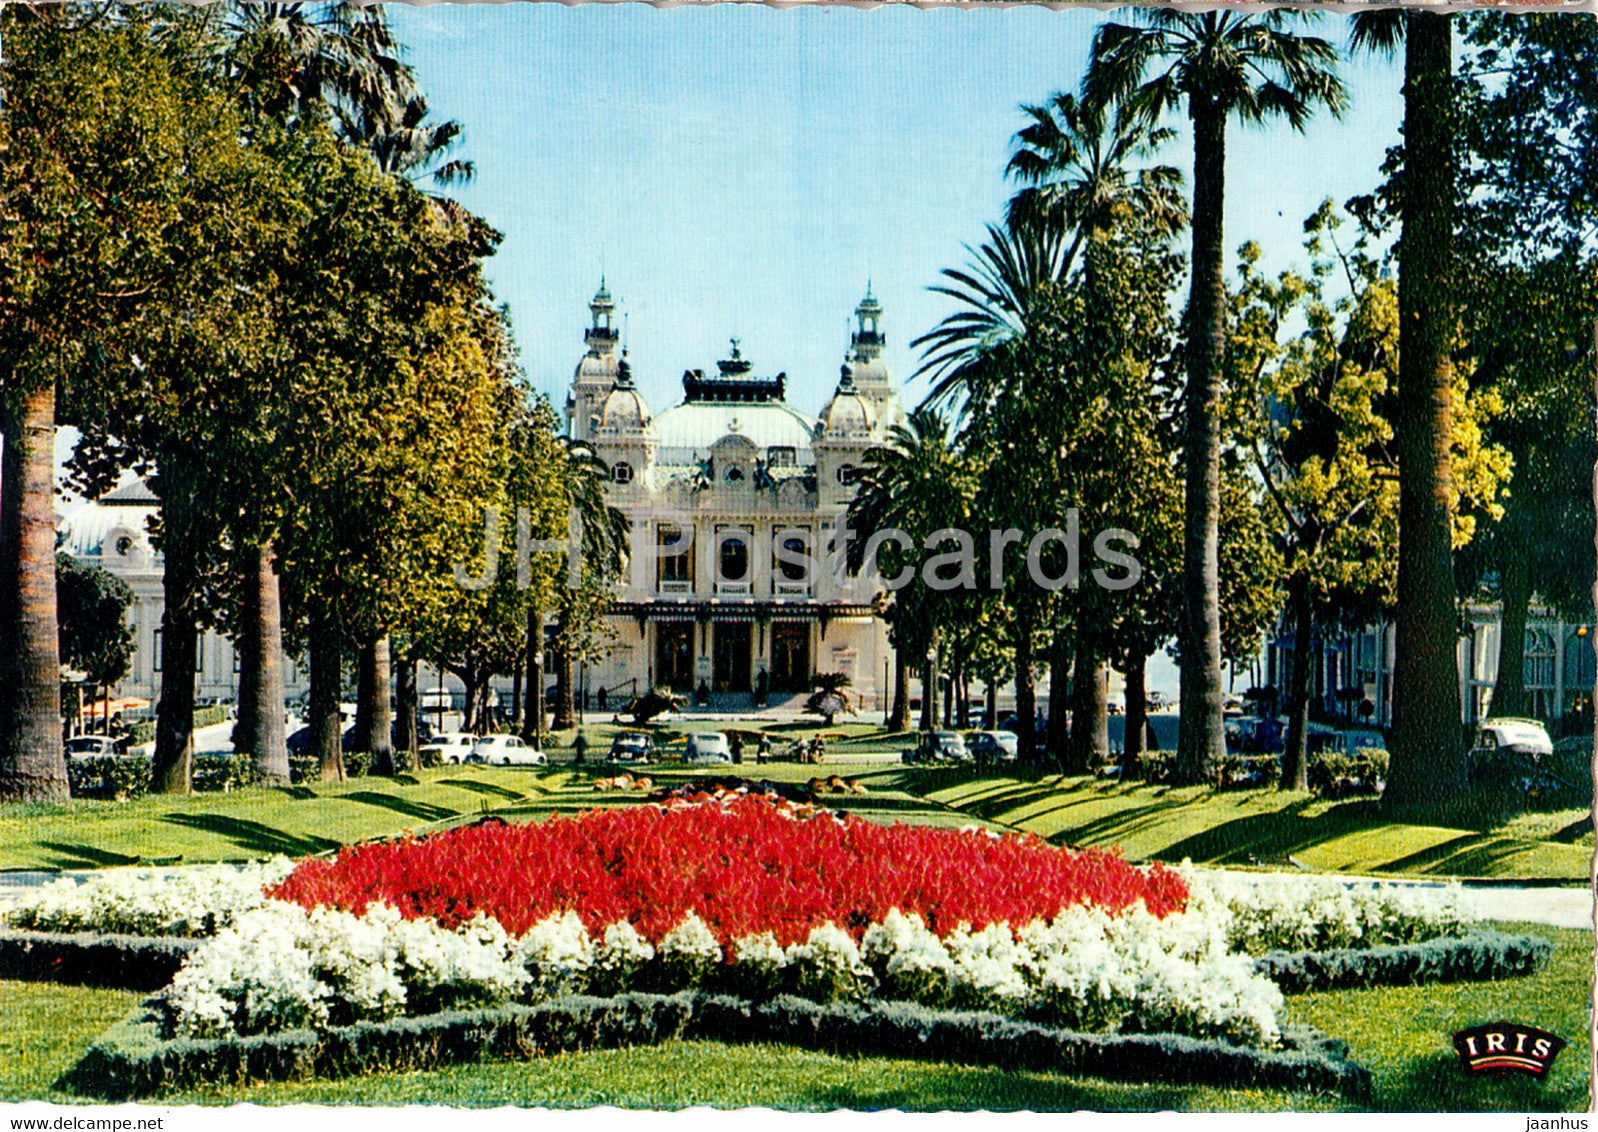 Monte Carlo - Le Casino et ses Jardins - Reflets de la Cote d'Azur - 1970 - Monaco - used - JH Postcards